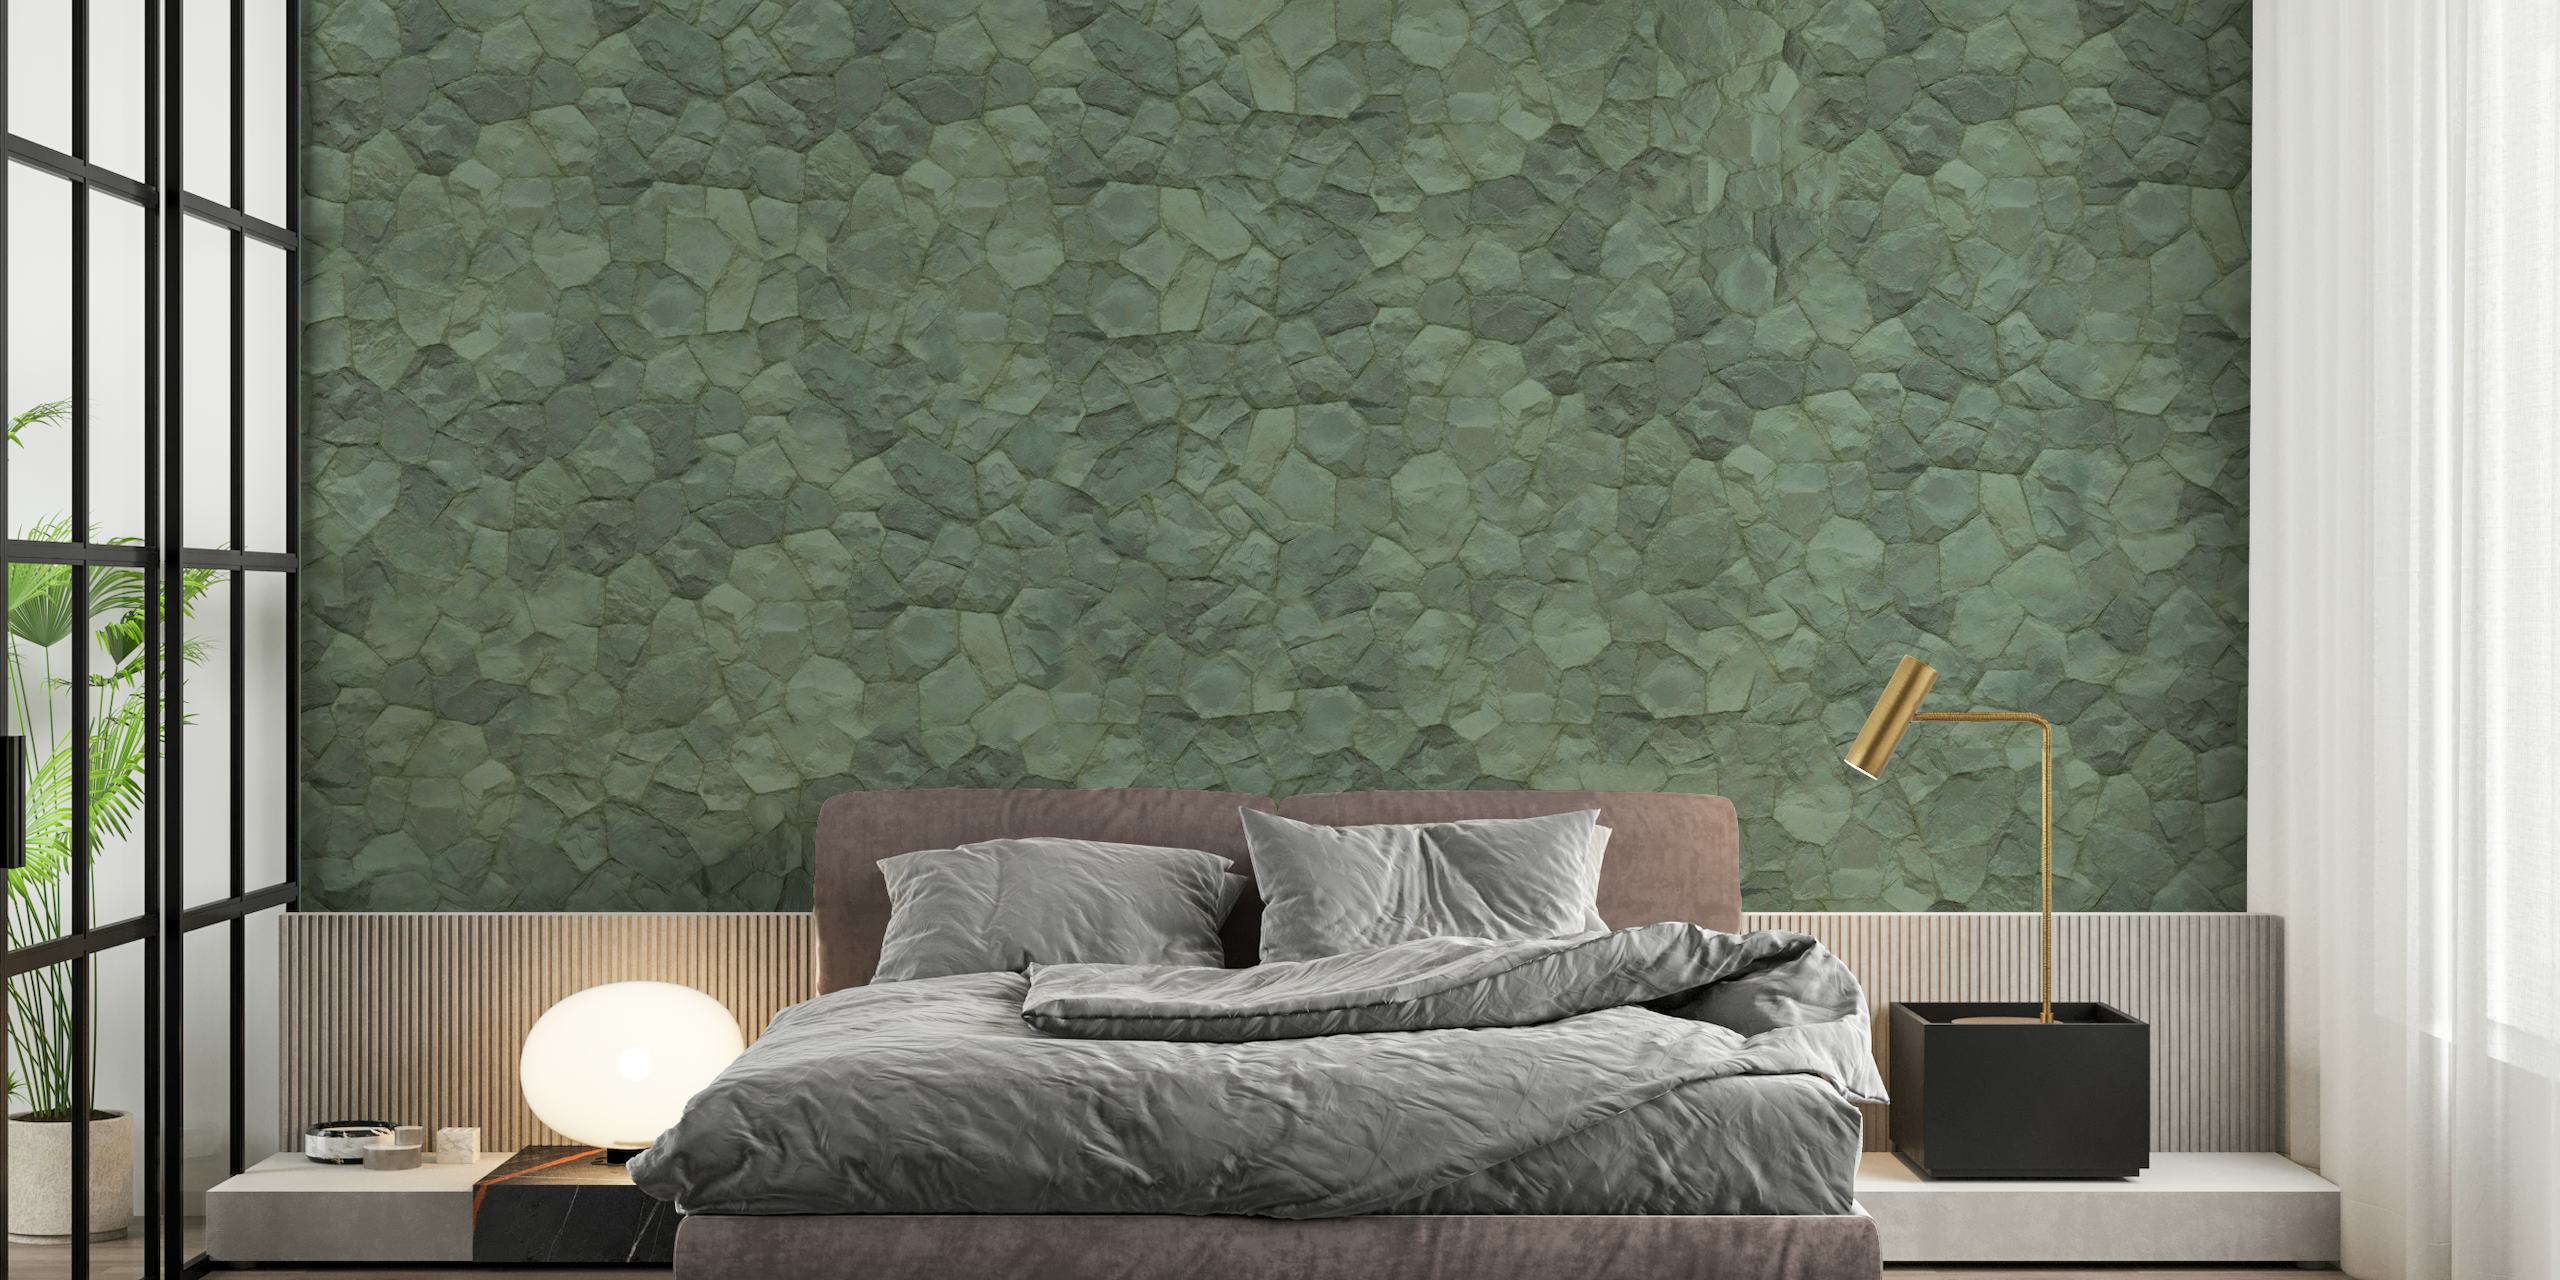 Fotomural con textura de piedra verde para un ambiente interior sereno